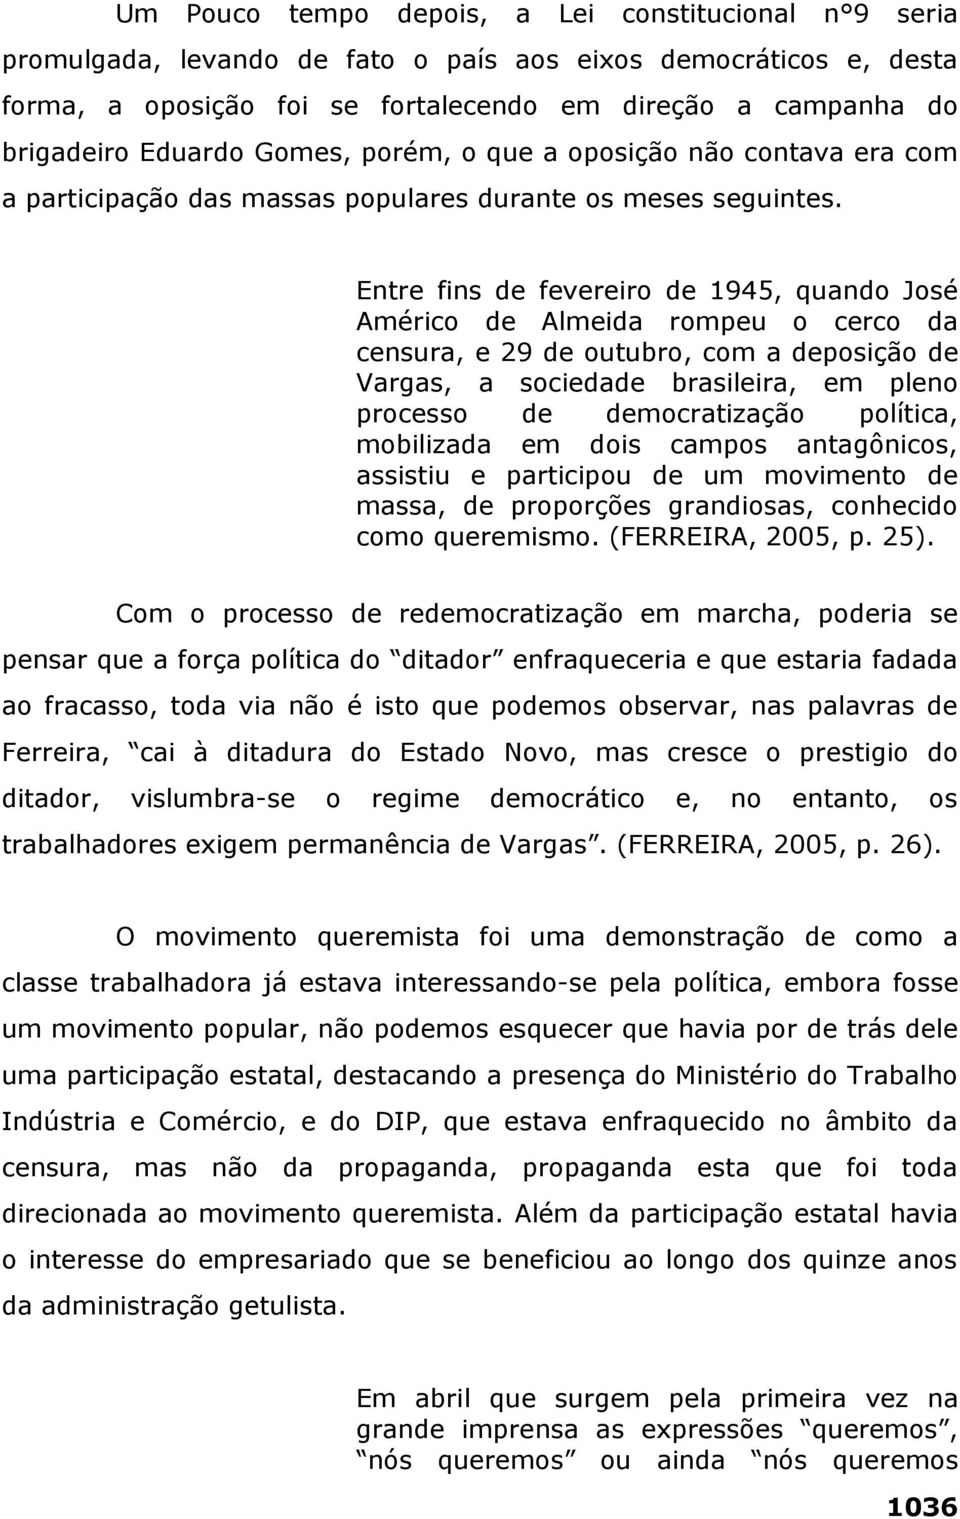 Entre fins de fevereiro de 1945, quando José Américo de Almeida rompeu o cerco da censura, e 29 de outubro, com a deposição de Vargas, a sociedade brasileira, em pleno processo de democratização